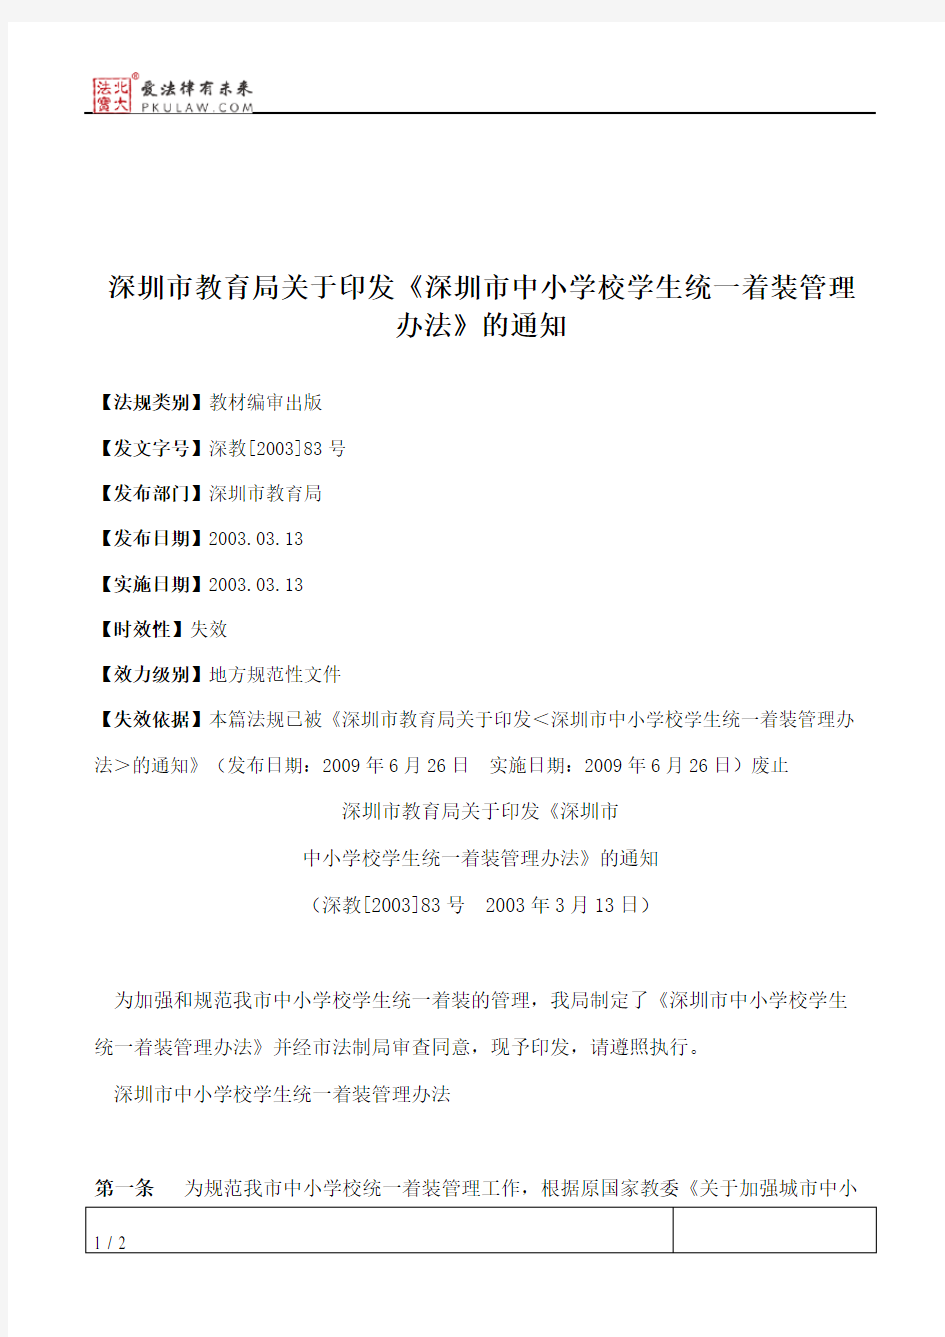 深圳市教育局关于印发《深圳市中小学校学生统一着装管理办法》的通知